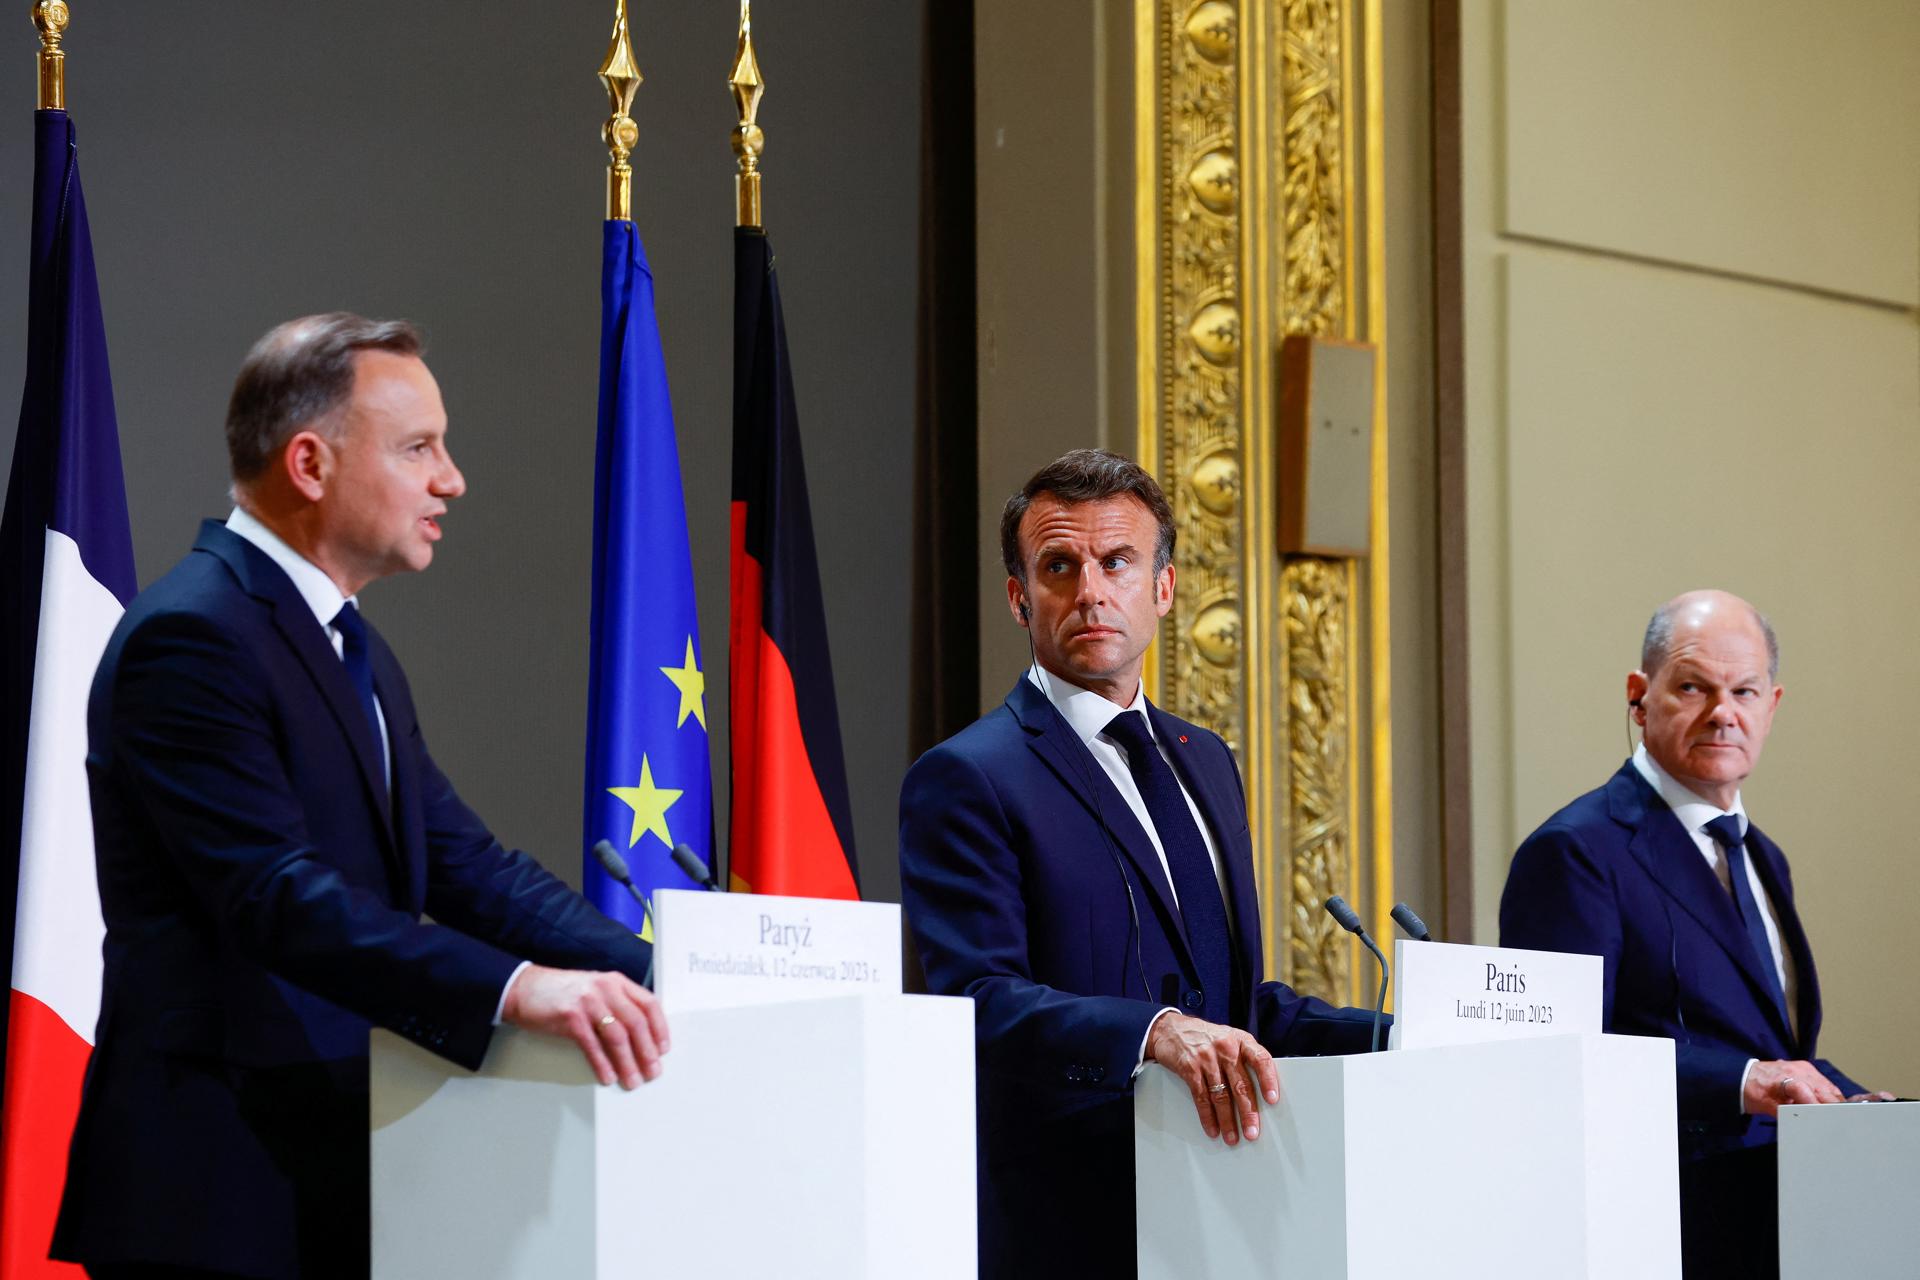 El presidente francés, Emmanuel Macron (centro), el canciller alemán, Olaf Scholz (derecha) y el presidente polaco, Andrzej Duda (izquierda) comparecen en una conferencia de prensa conjunta en París celebrada en el Palacio del Elíseo. EFE/EPA/Sarah Meyssonnier